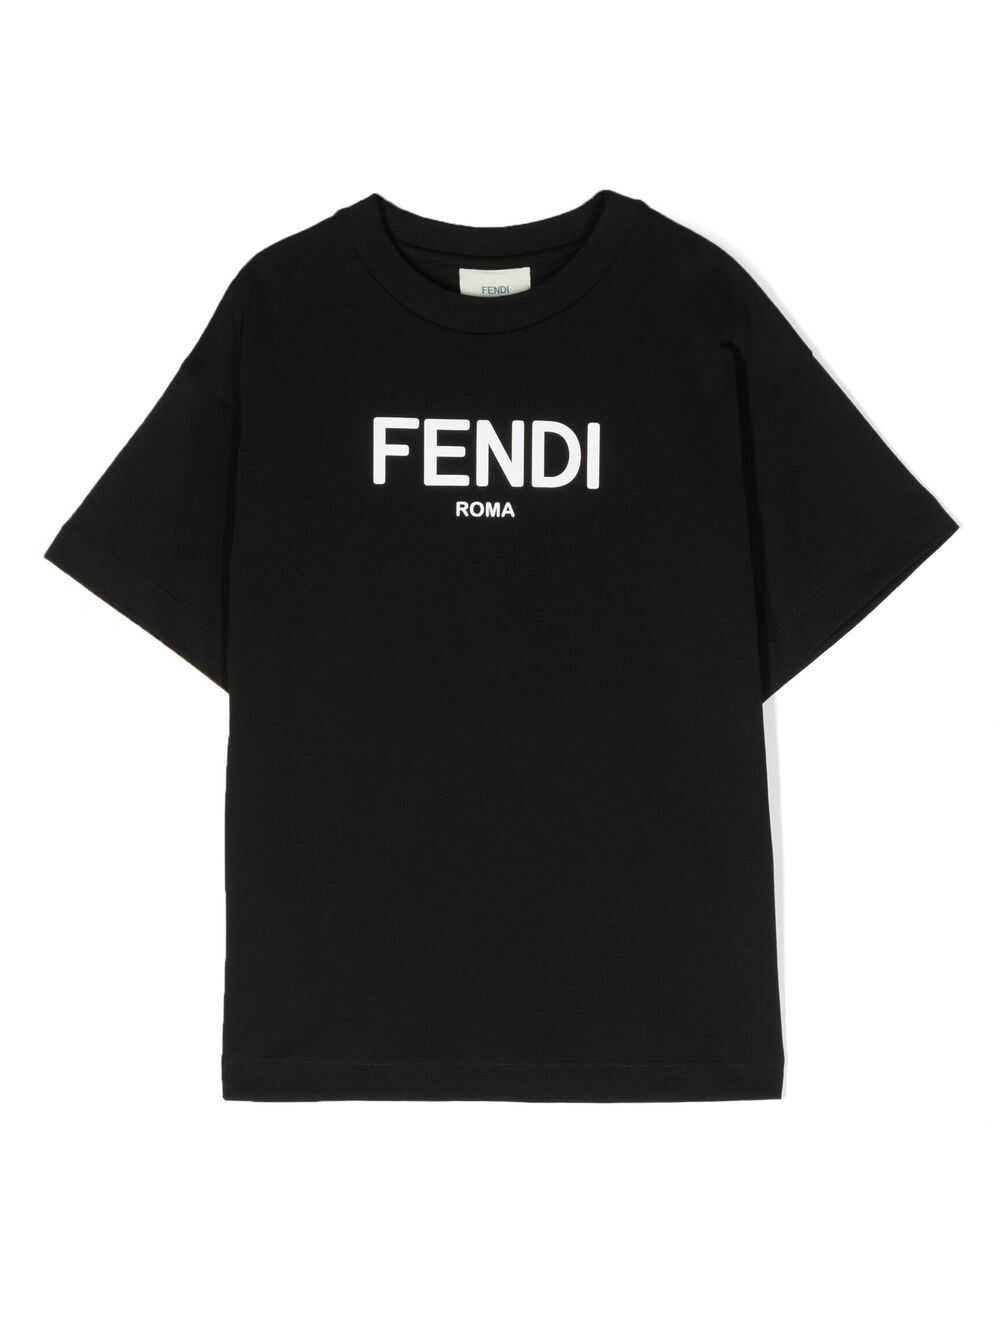 Fendi Fendi Kids T-shirts And Polos Black Black